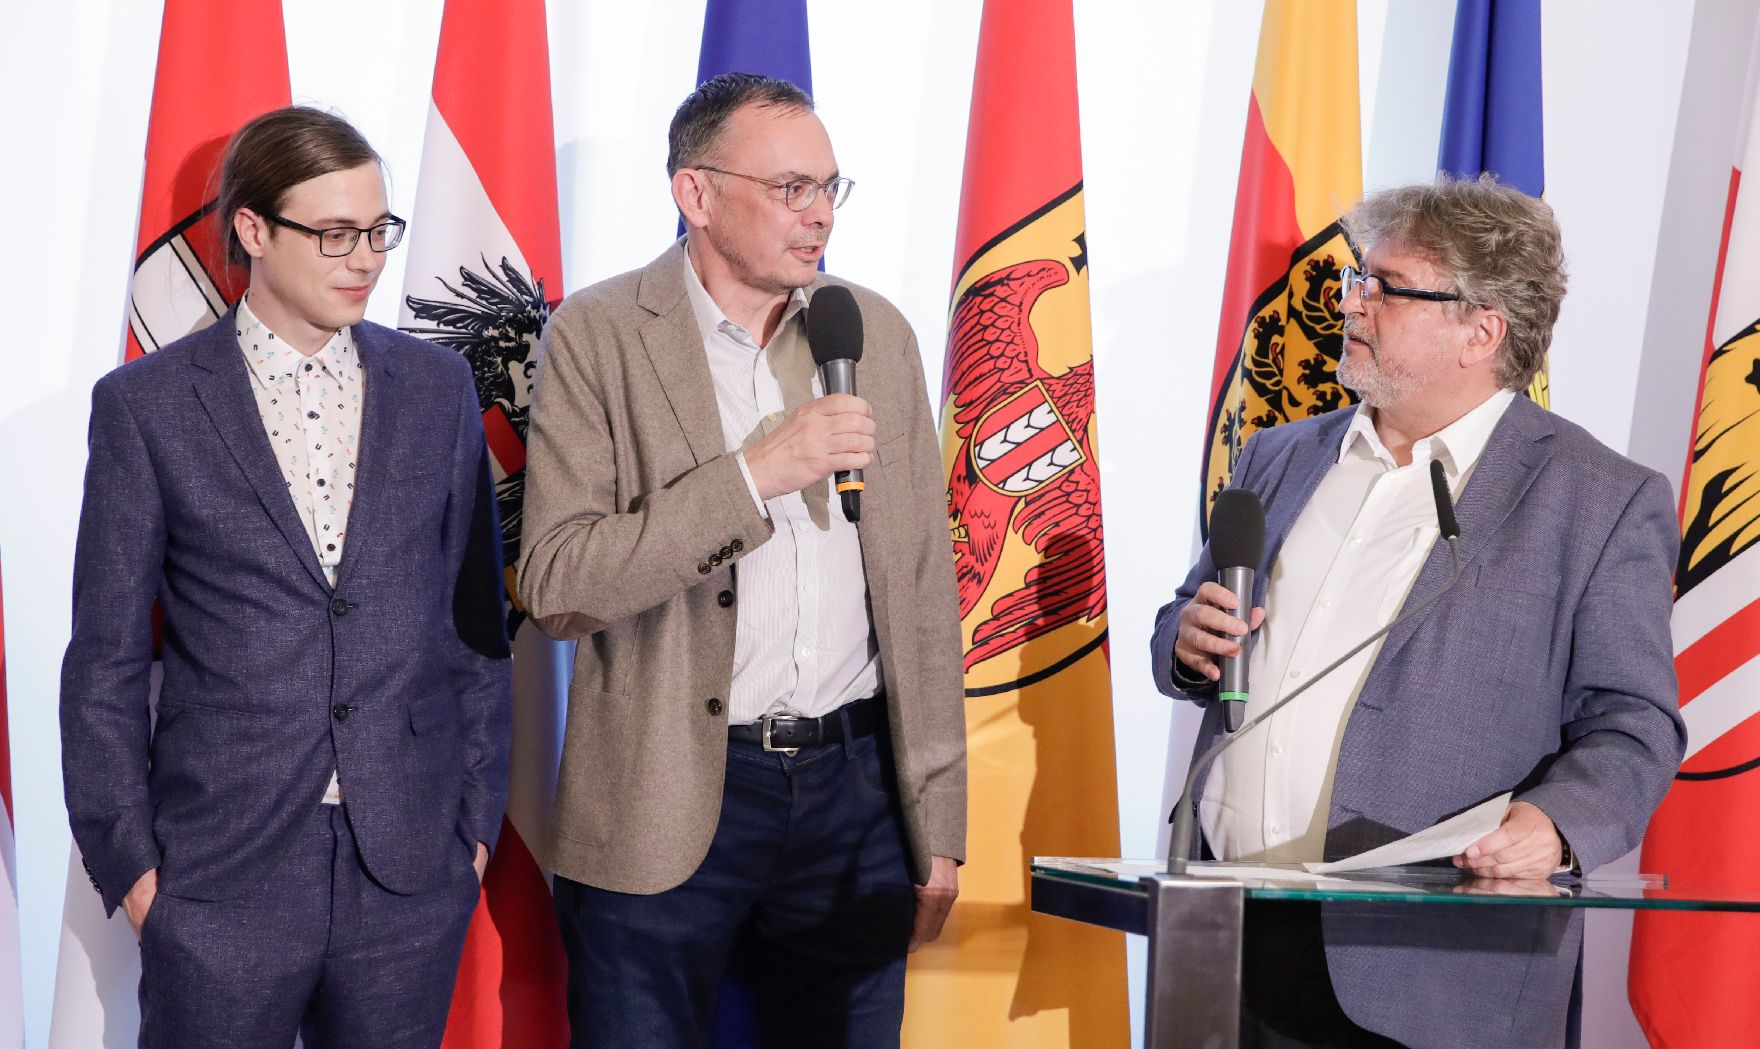 Am 25. April 2018 fand die Überreichung des Österreichischen Buchhandlungspreises im Bundeskanzleramt statt. Im Bild Moderator Norbert Mayer (r.) mit den Preisträgern der Buchhandlung "Haymon".